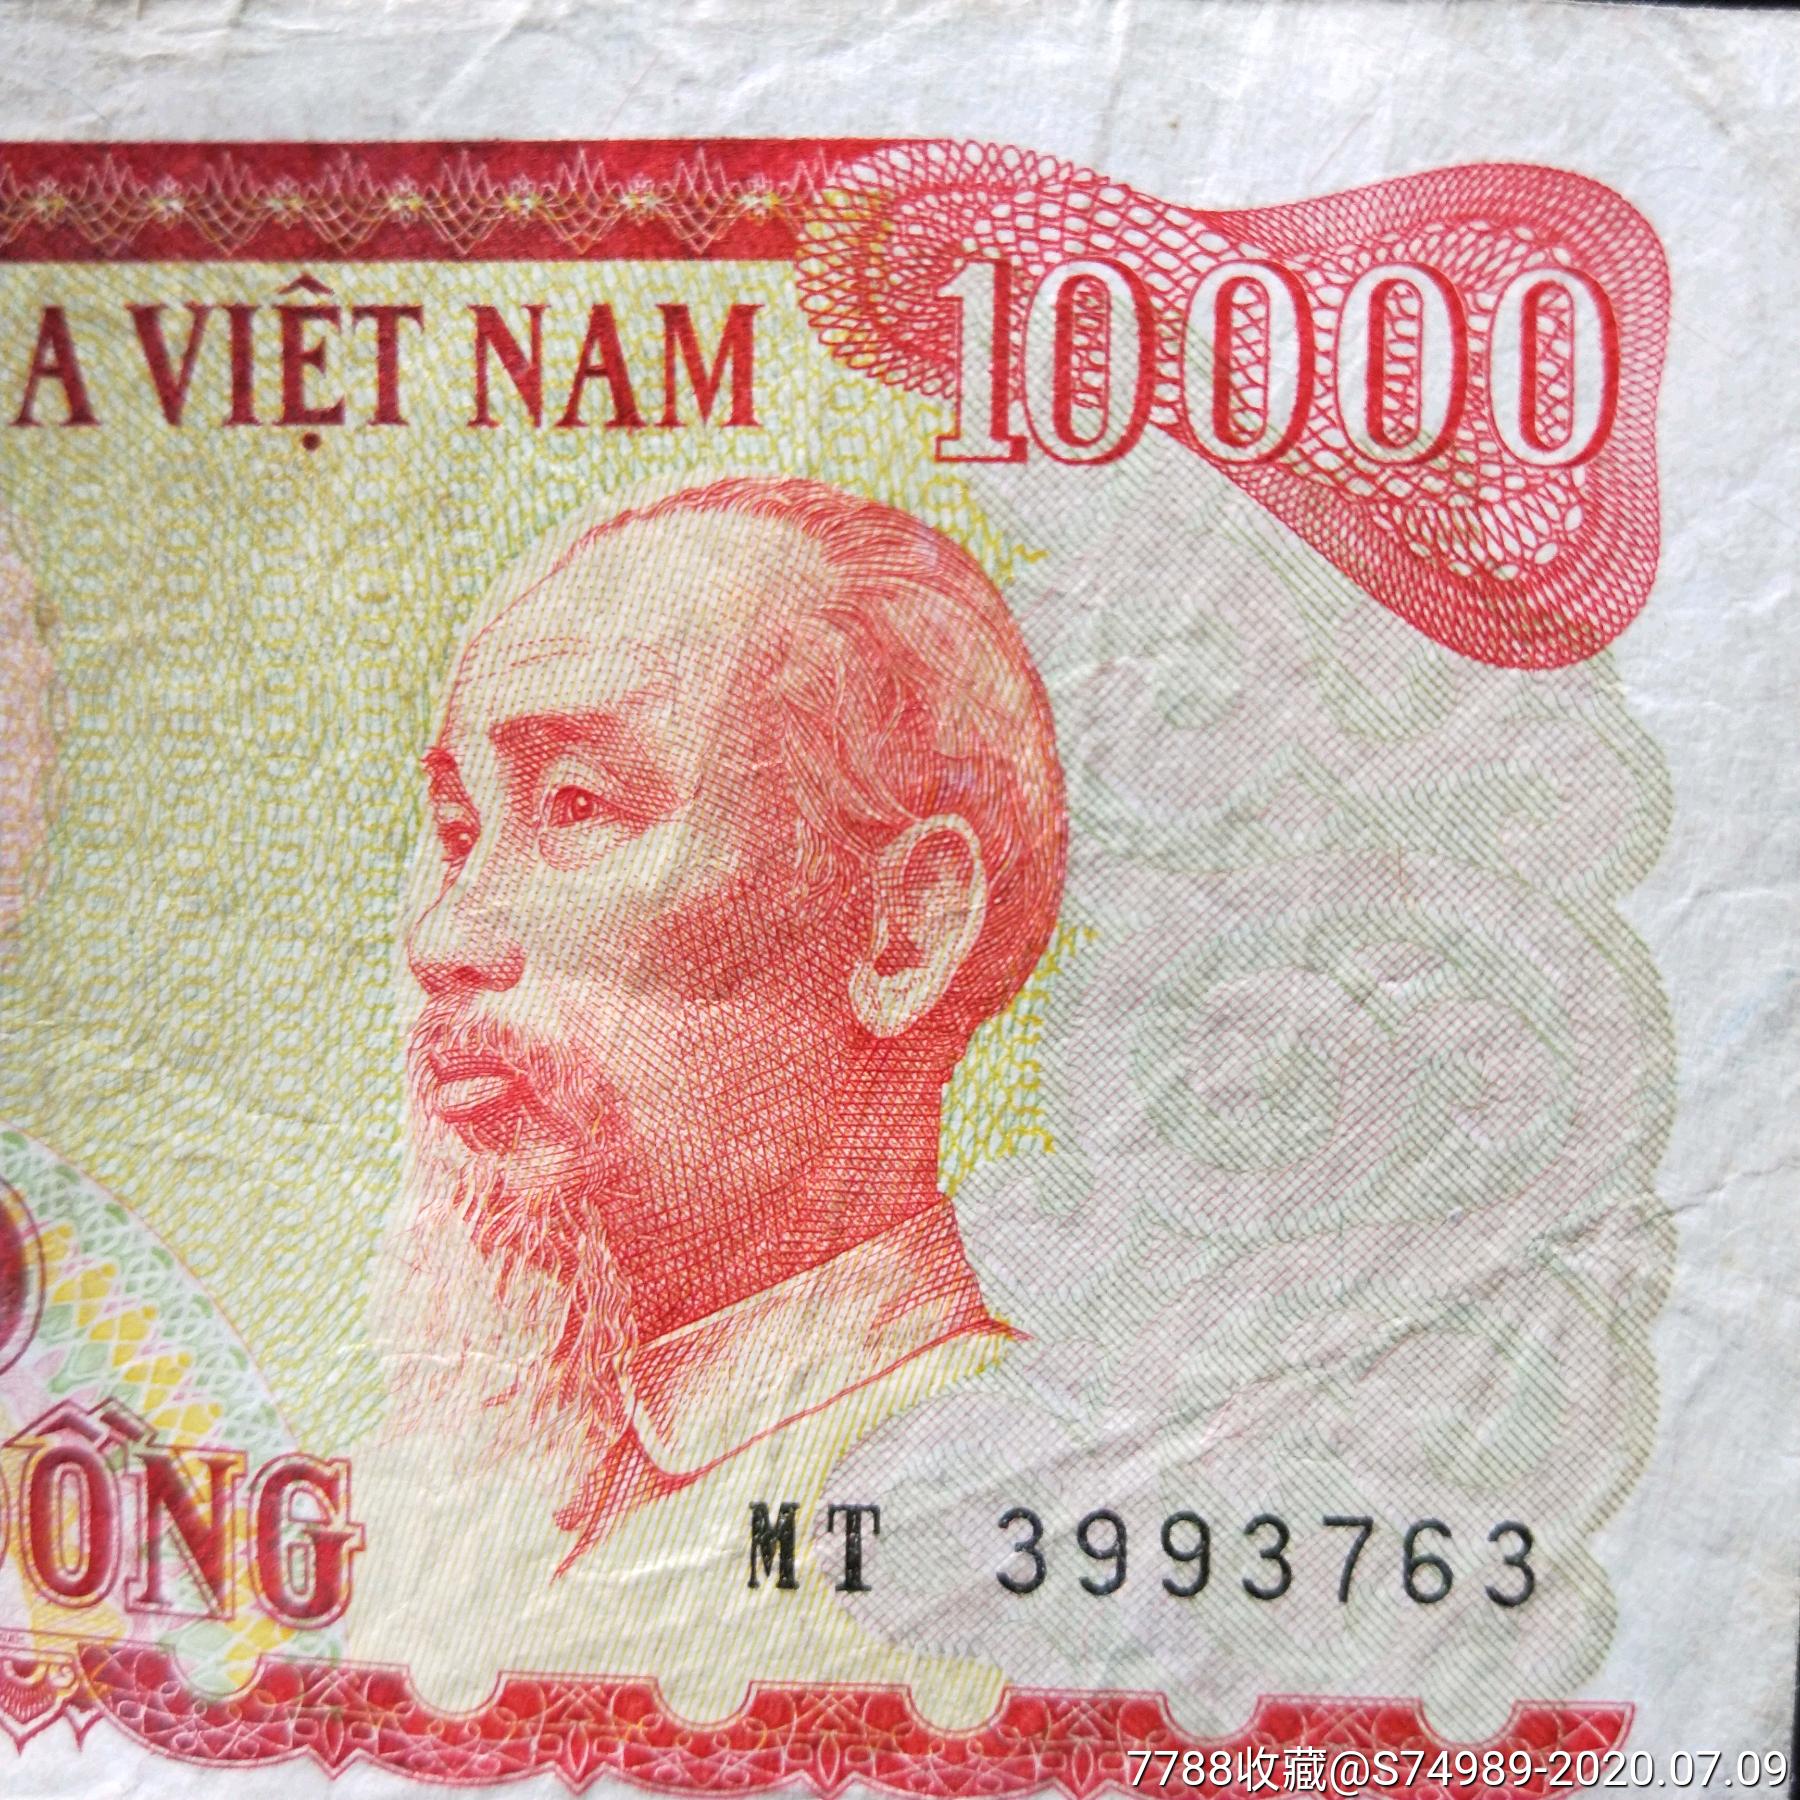 10000越南盾,越南盾最大面值是多少 - 伤感说说吧